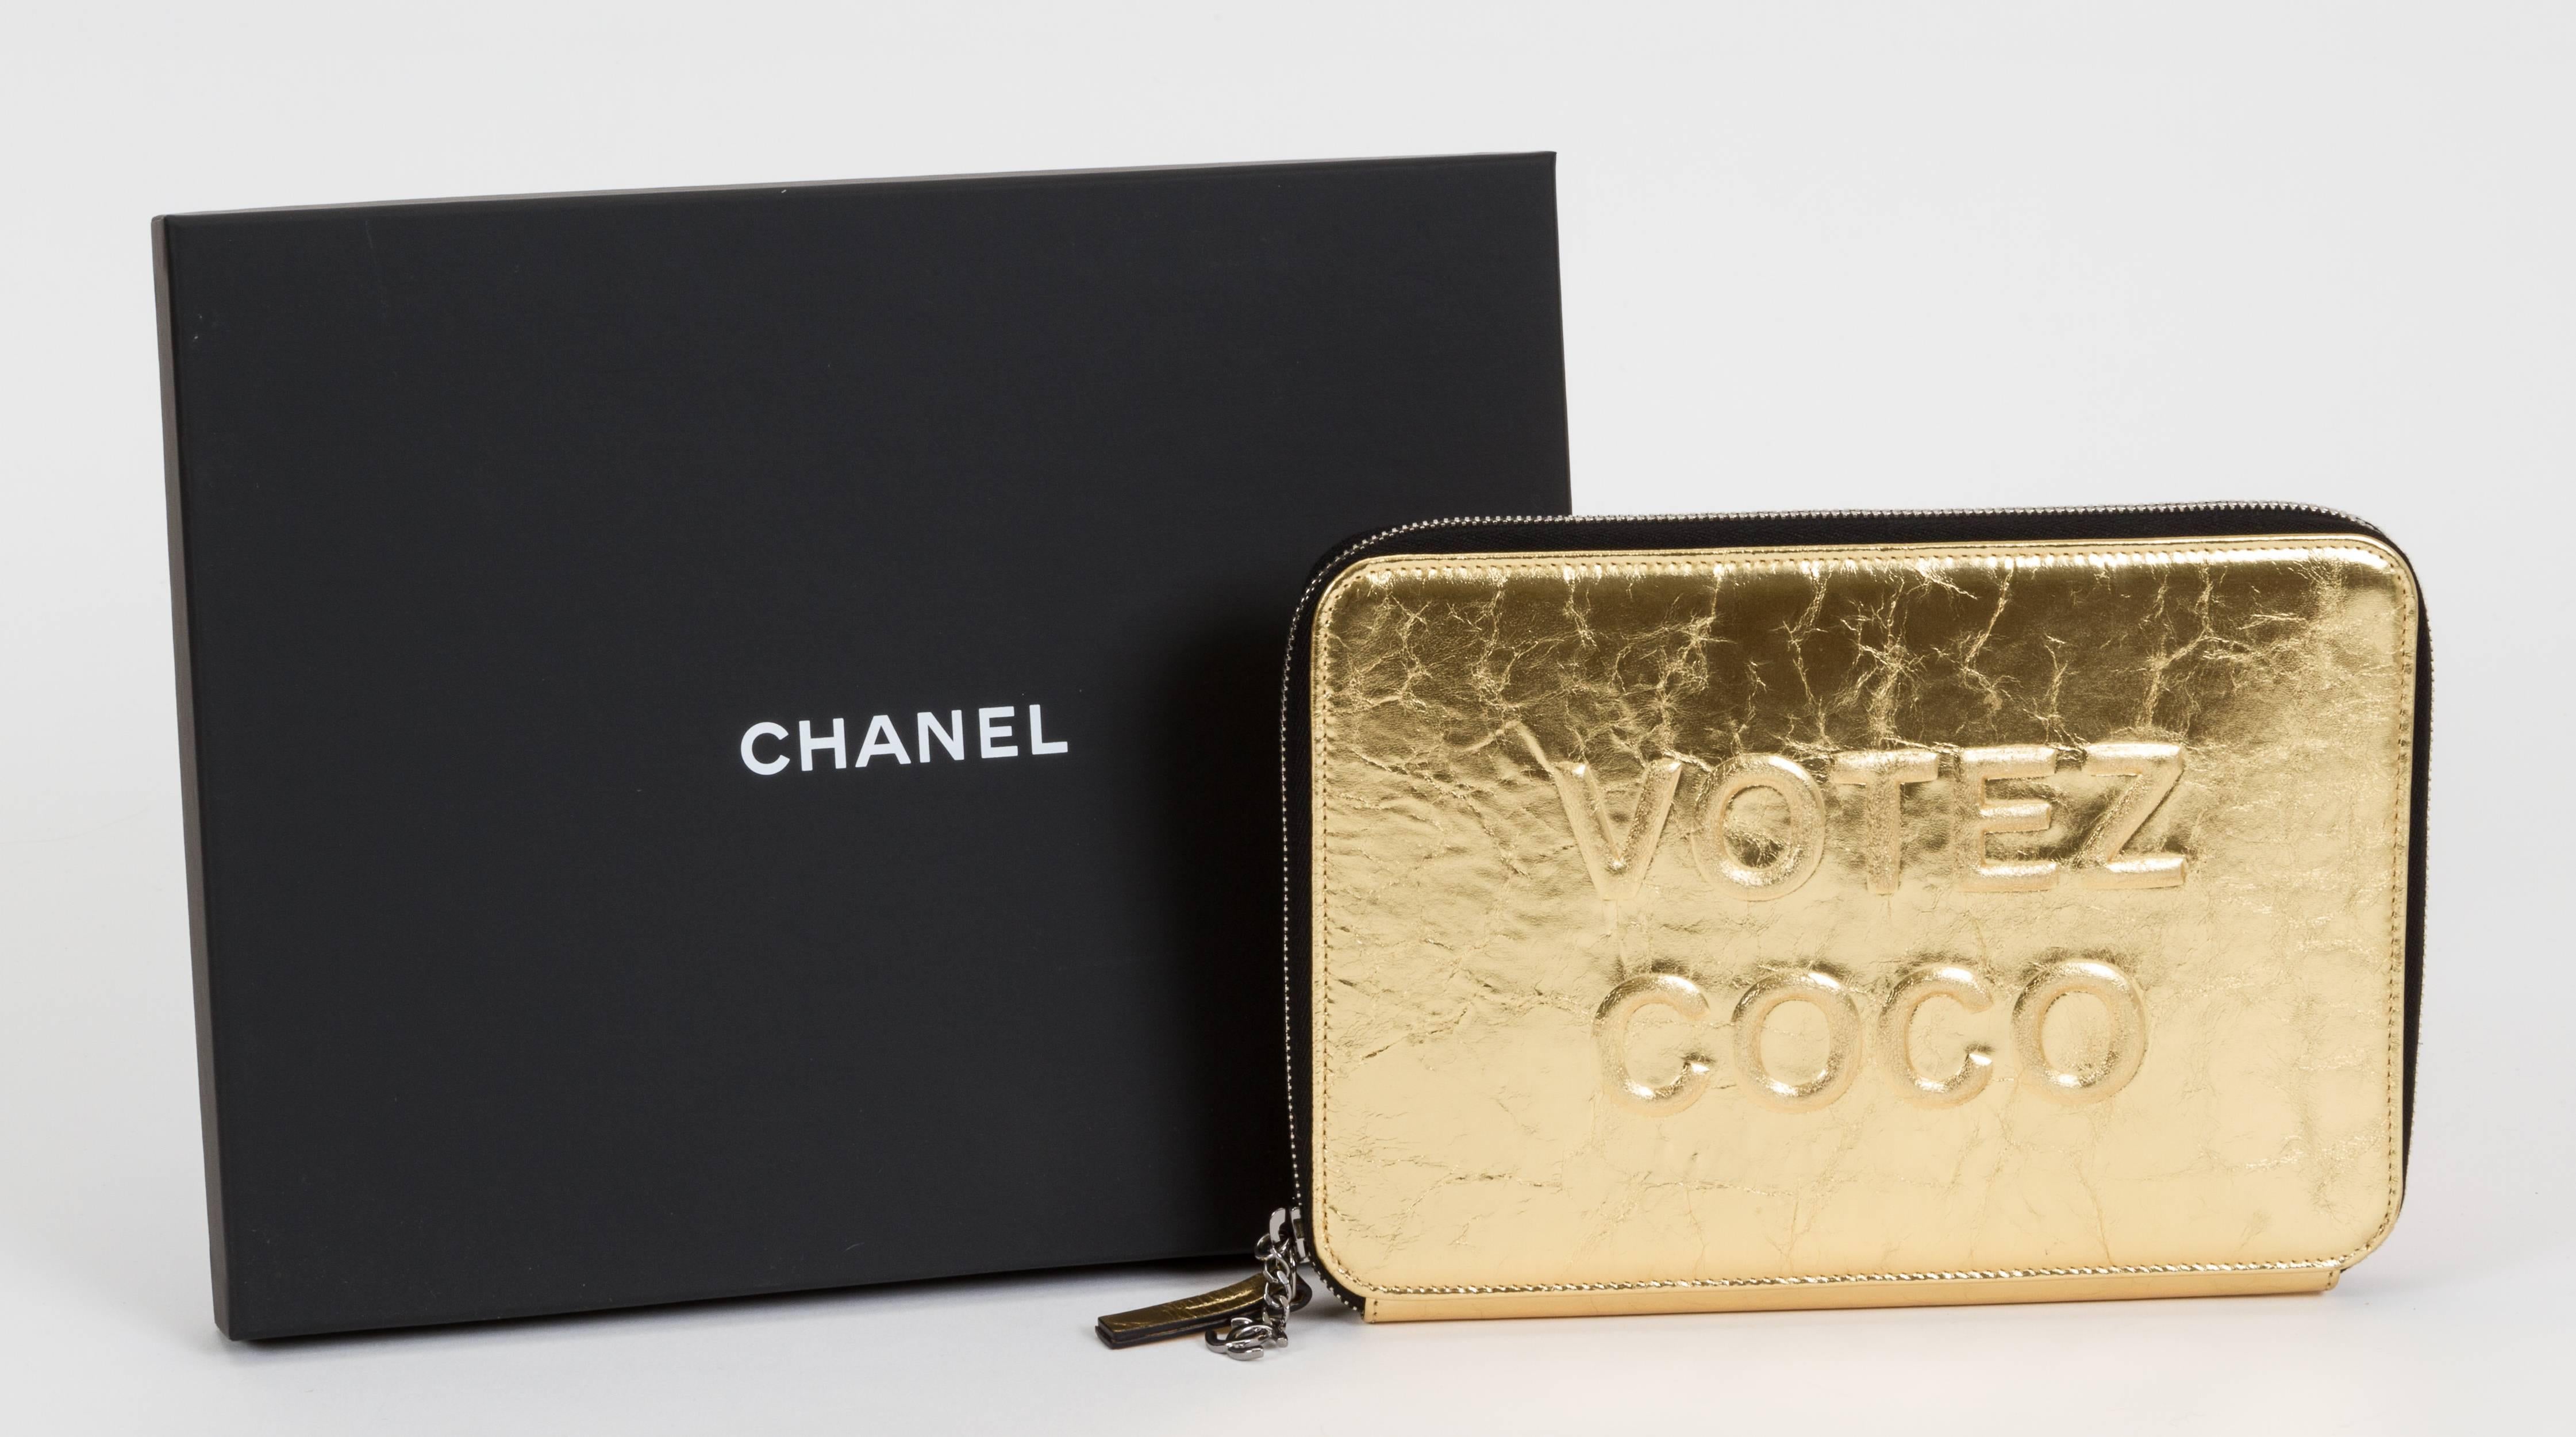 Pochette Chanel en édition limitée Votez Coco en cuir doré craquelé, zippée avec compartiments pour cartes de crédit. Neuf dans sa boîte avec hologramme, carte d'identité, livret, housse de velours et boîte.
